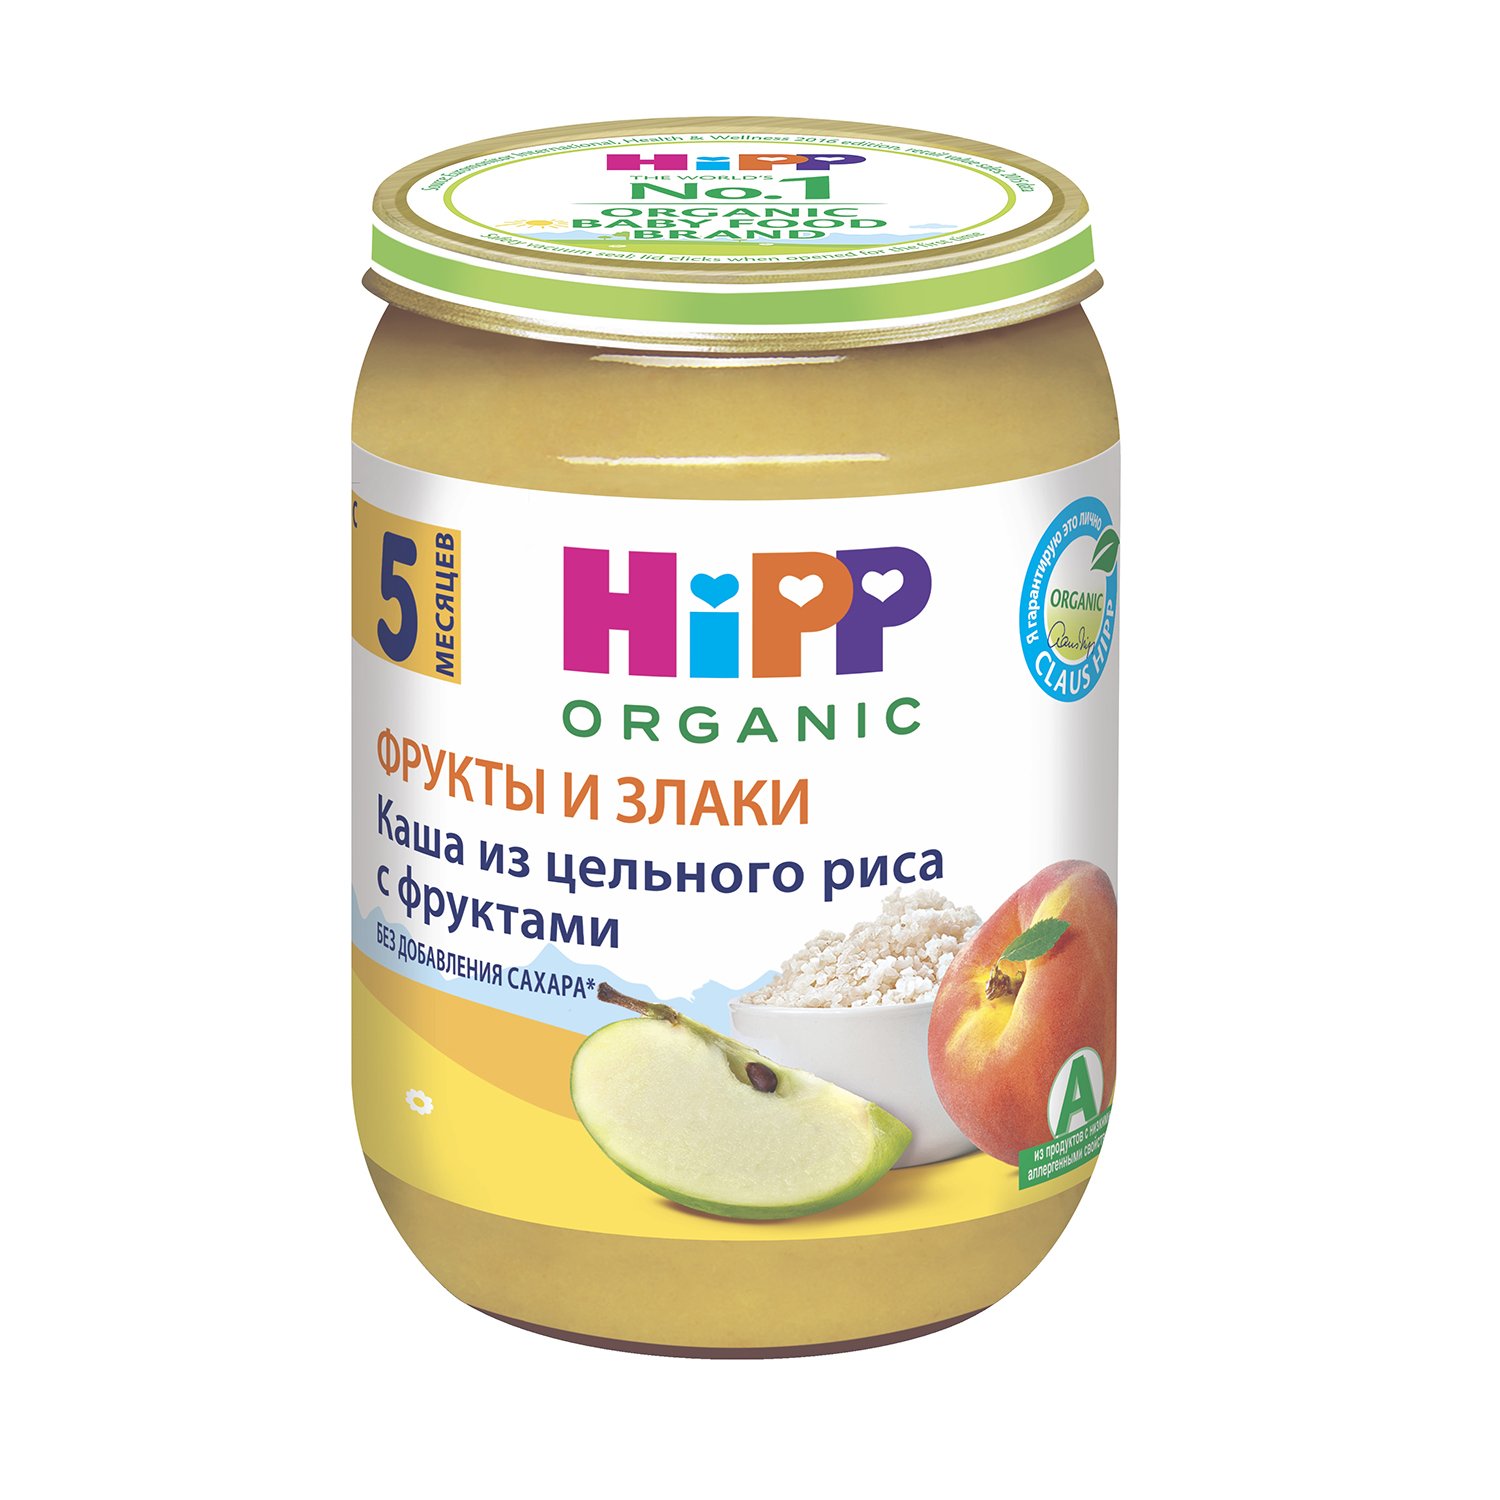 Hipp organic фрукты и злаки рисовая каша с фруктами без сахара 5+месяцев 190г